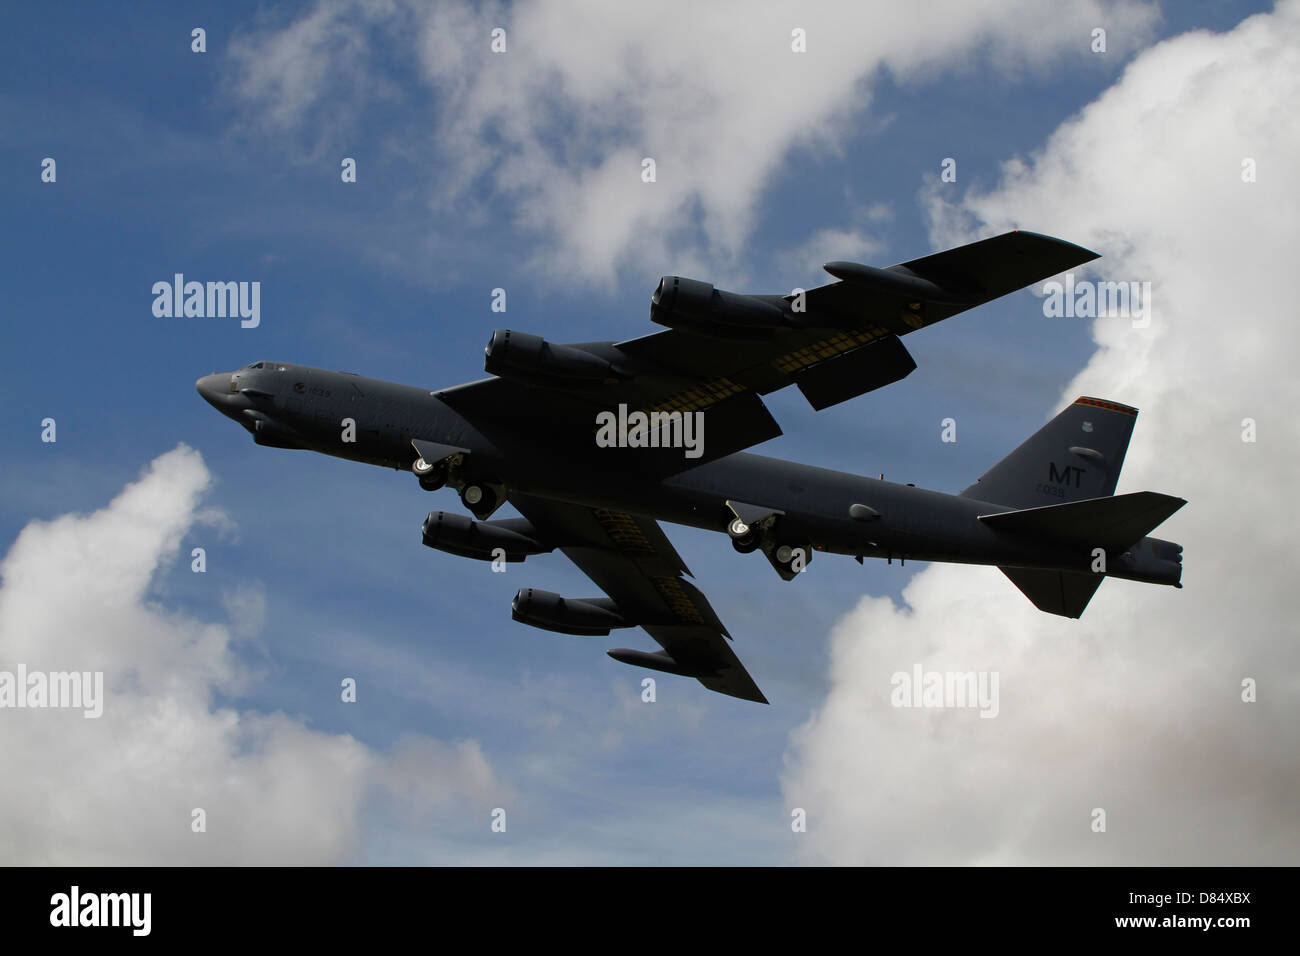 Ein b-52 Stratofortress schwerer Bomber der US Air Force startet vom Luftwaffenstützpunkt Fairford, Vereinigtes Königreich. Stockfoto